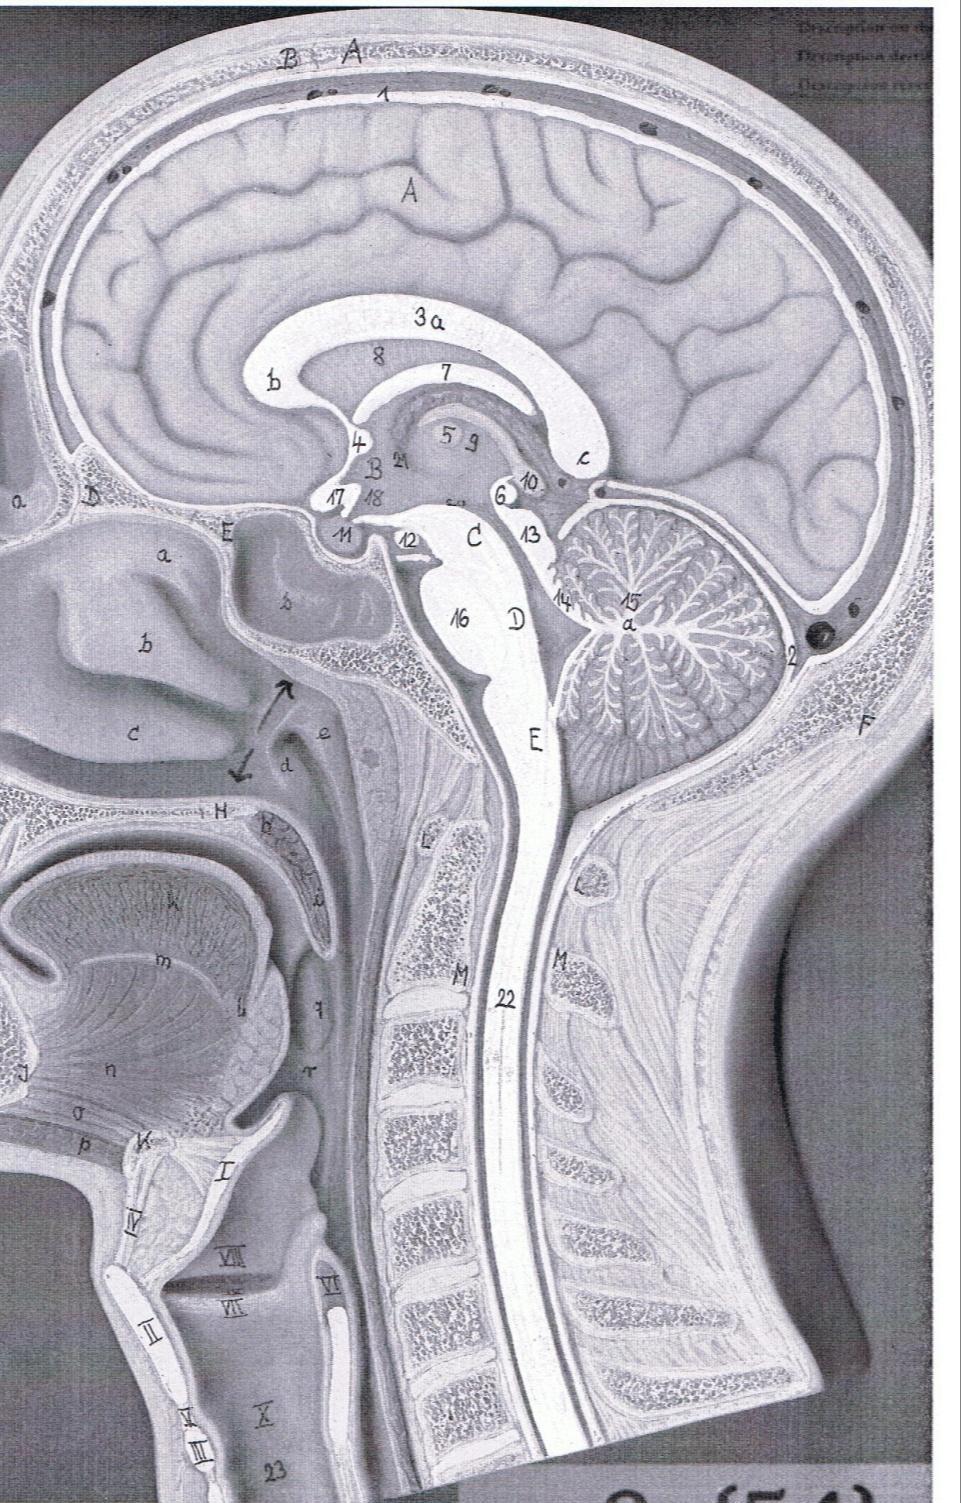 Septum pellucidum Corpus Callosum Lateral Ventricle Intermediate mass Thalamus Hypothalamus Cerebral Peduncles Cerebral Aqueduct Pons Medulla Forth